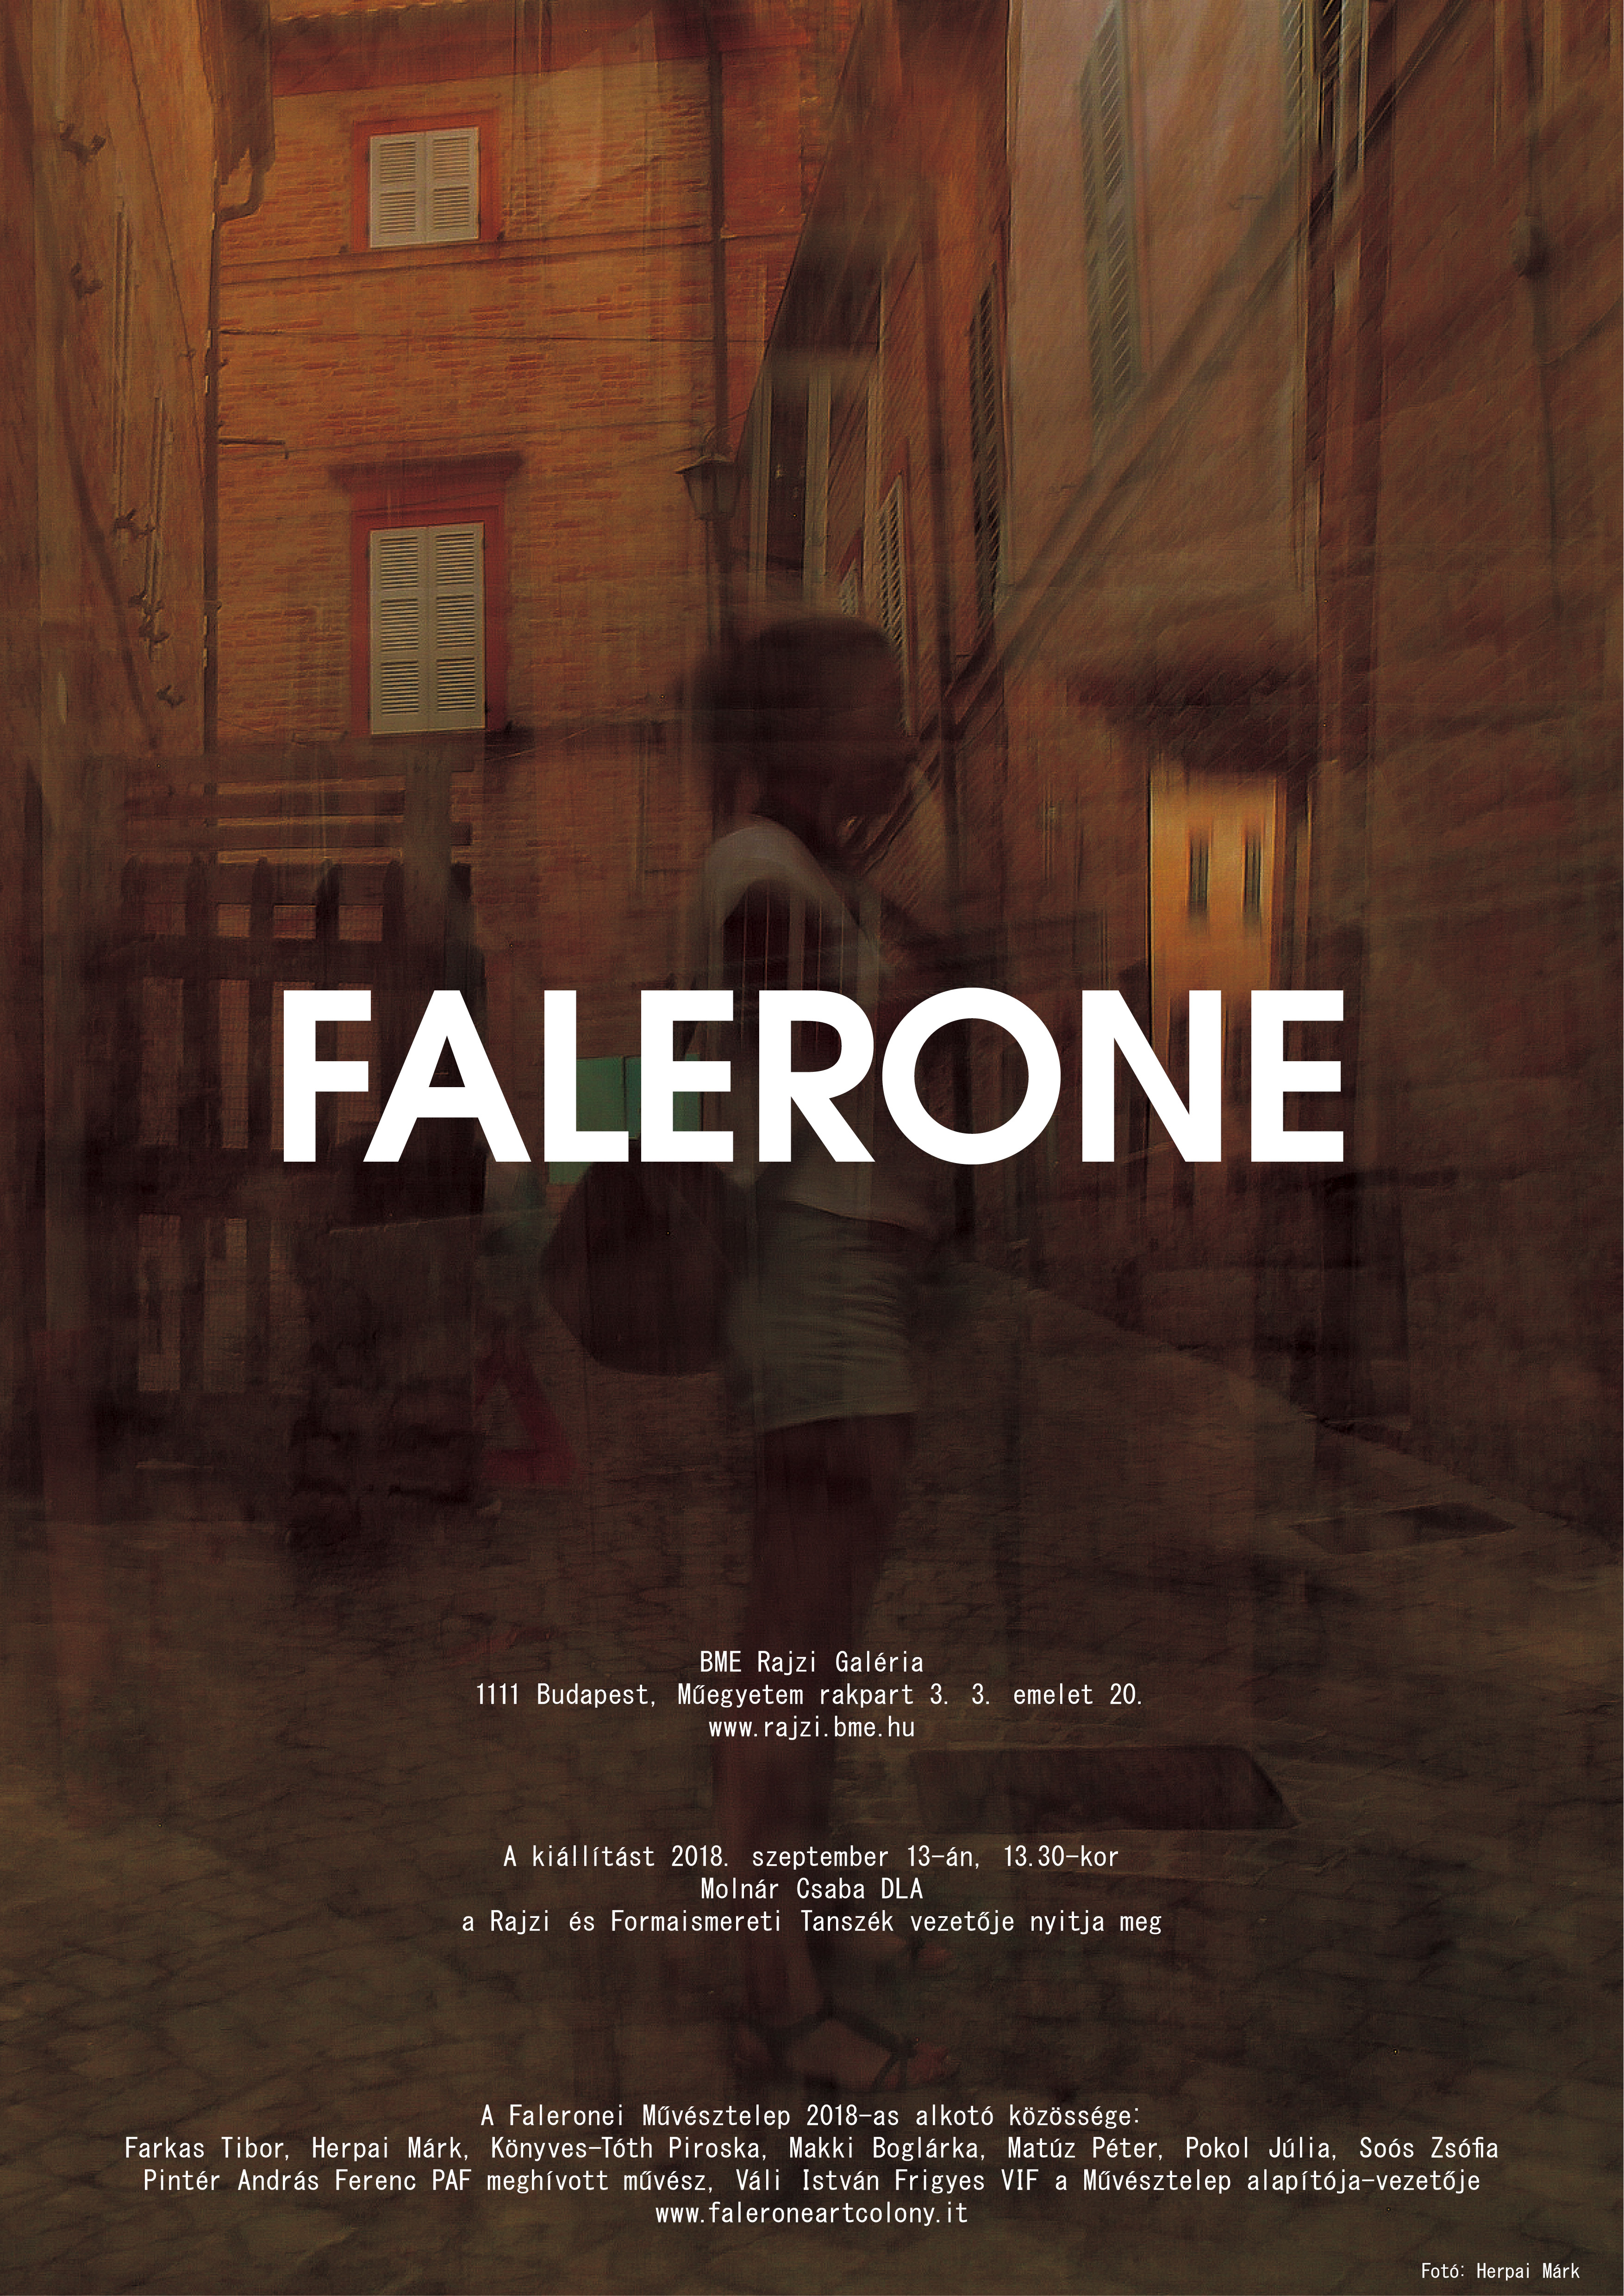 falerone2018 plakat rajzi galeria